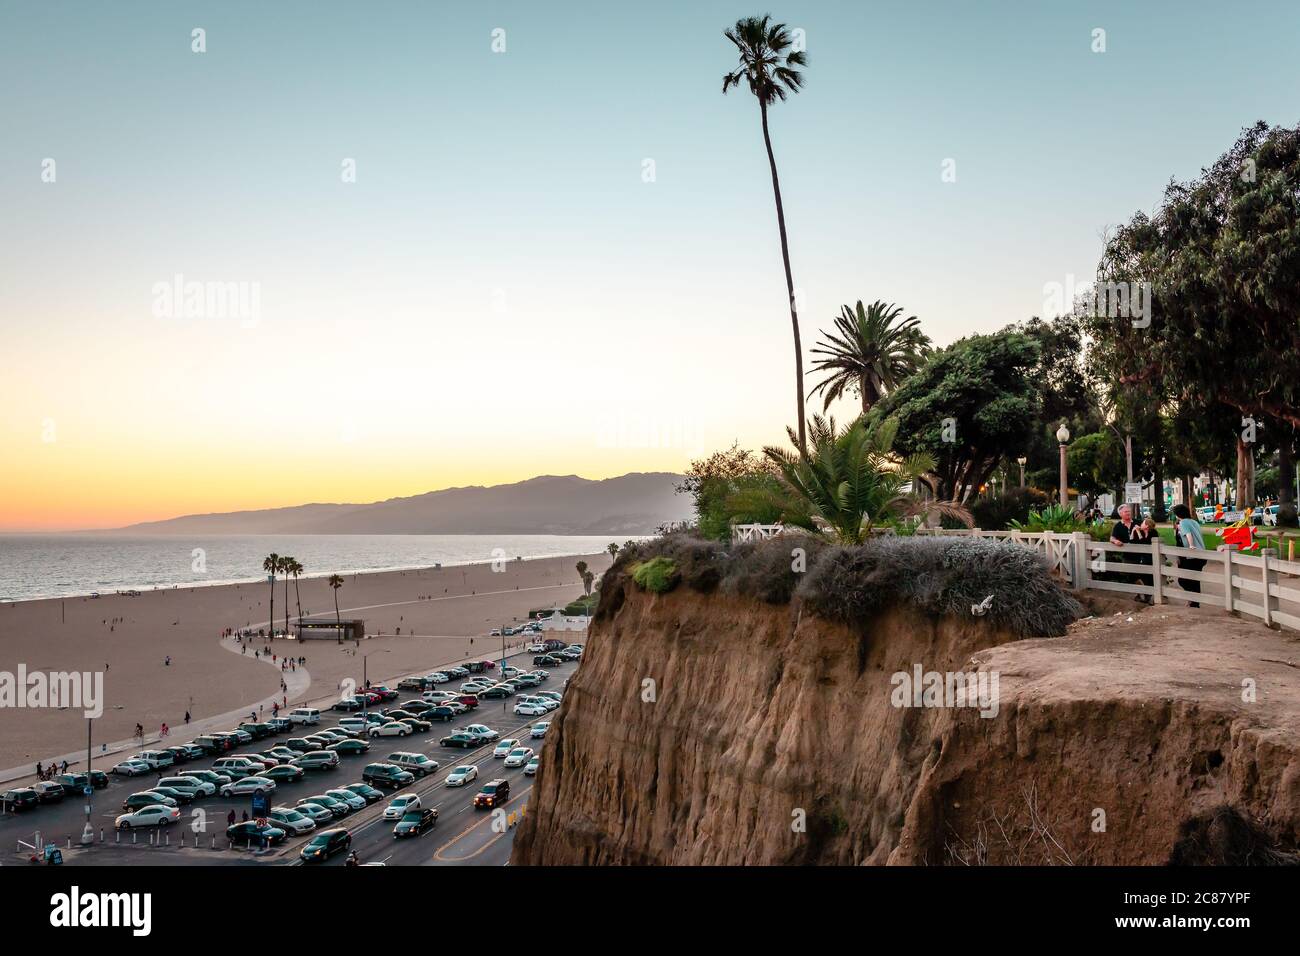 Santa Monica / CA - juillet 26 2015: Vue sur la plage, la promenade face à l'océan, la Pacific Coast Highway et le parc Palisades, au crépuscule. Banque D'Images